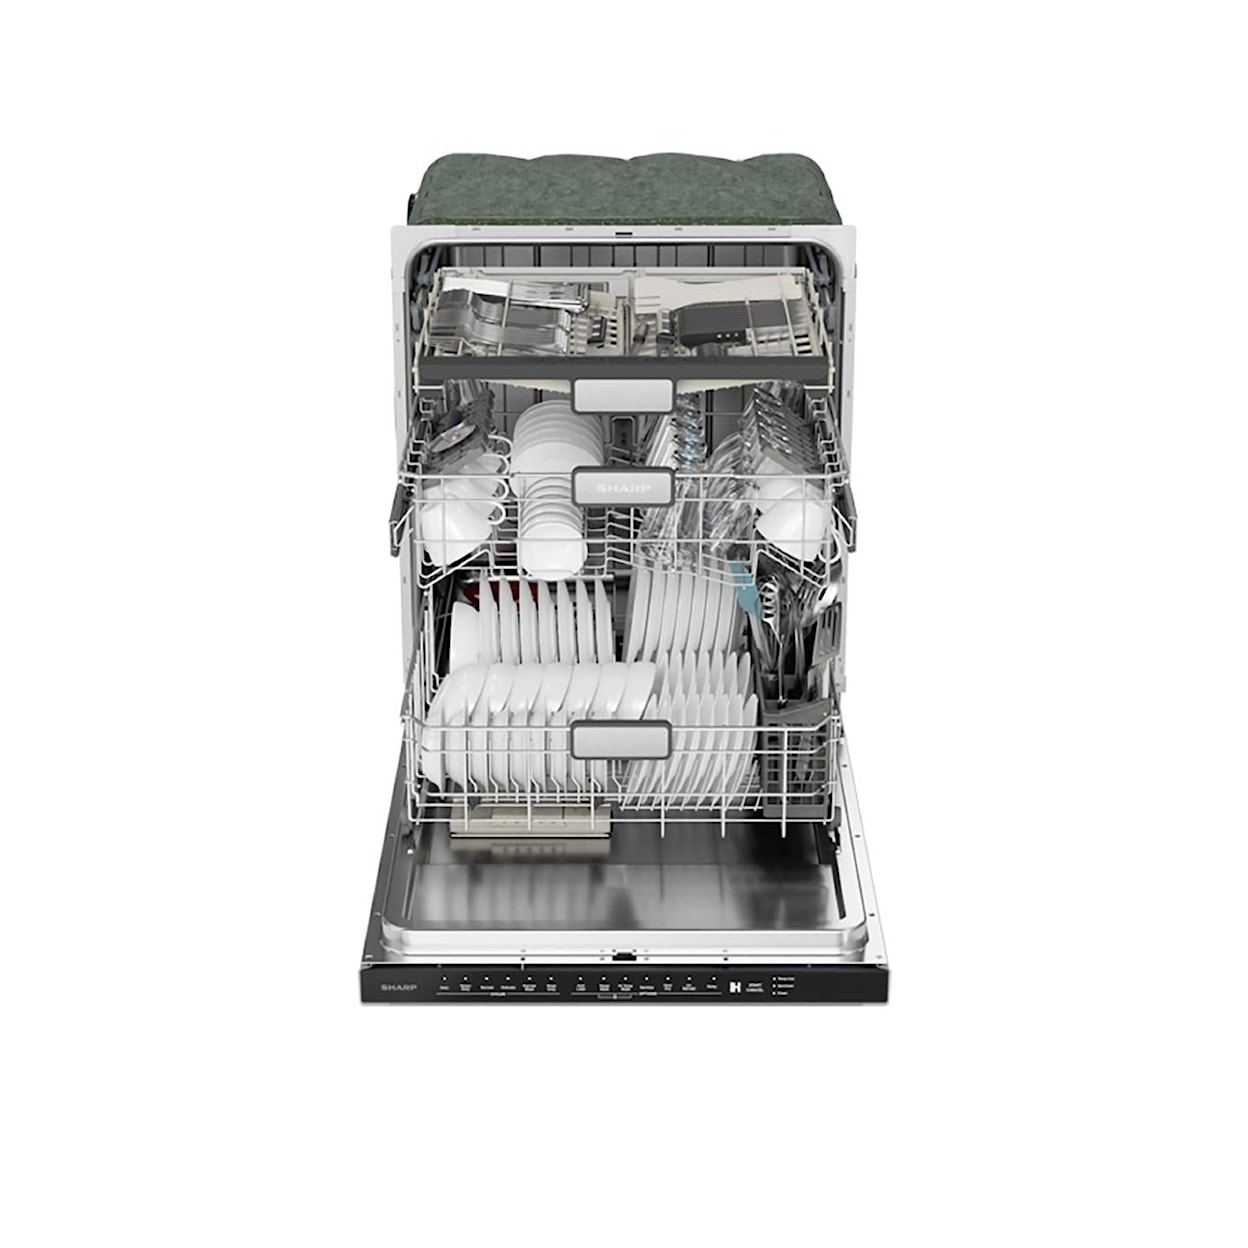 Sharp Appliances Dishwashers Dishwasher